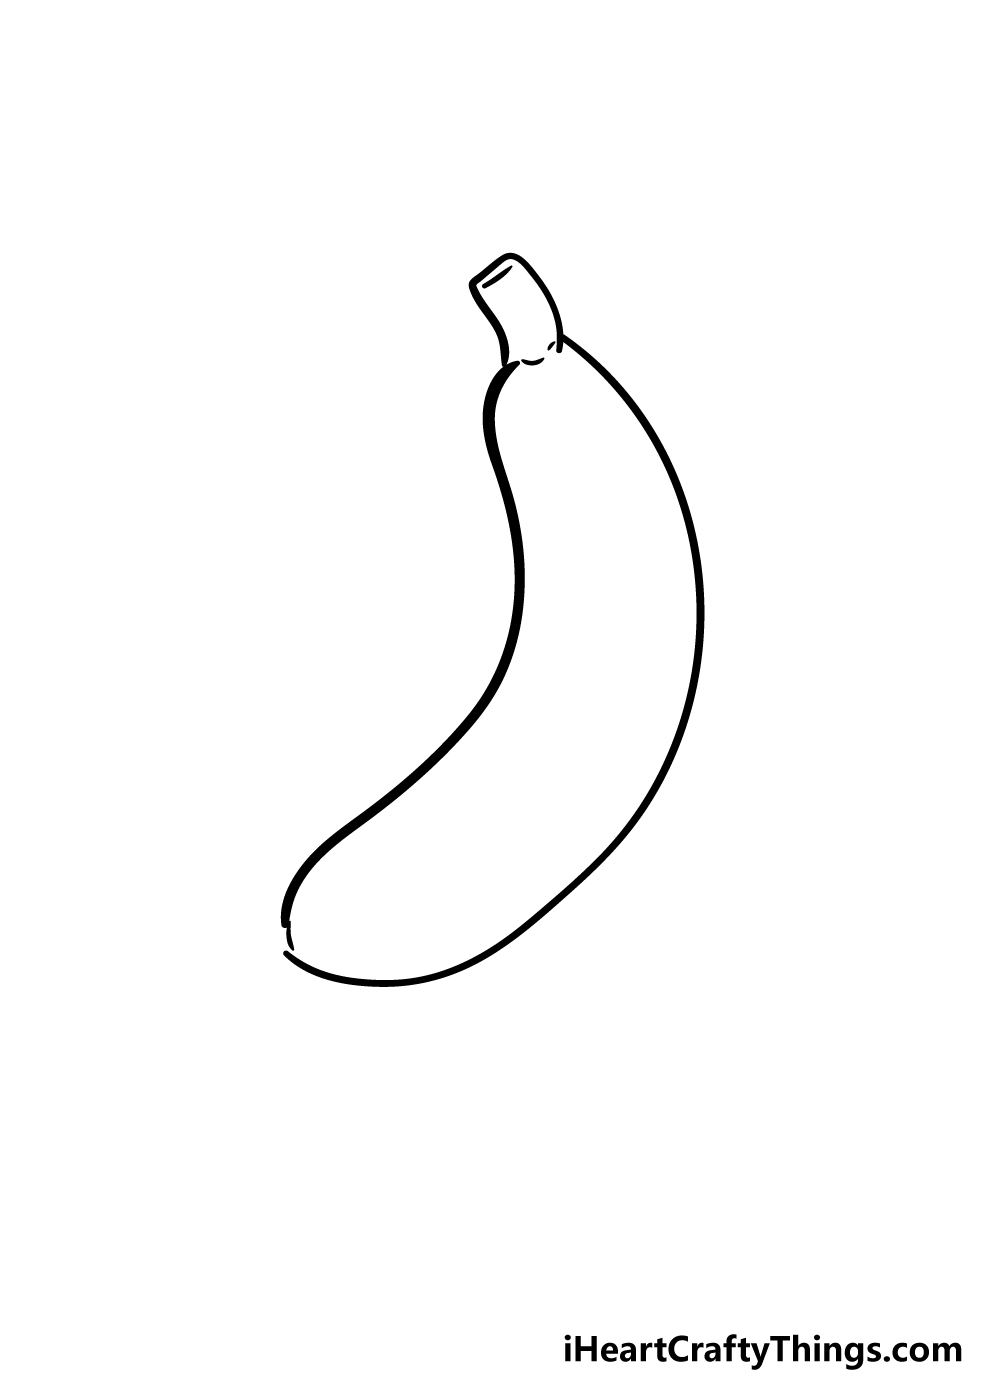 banana drawing step 3